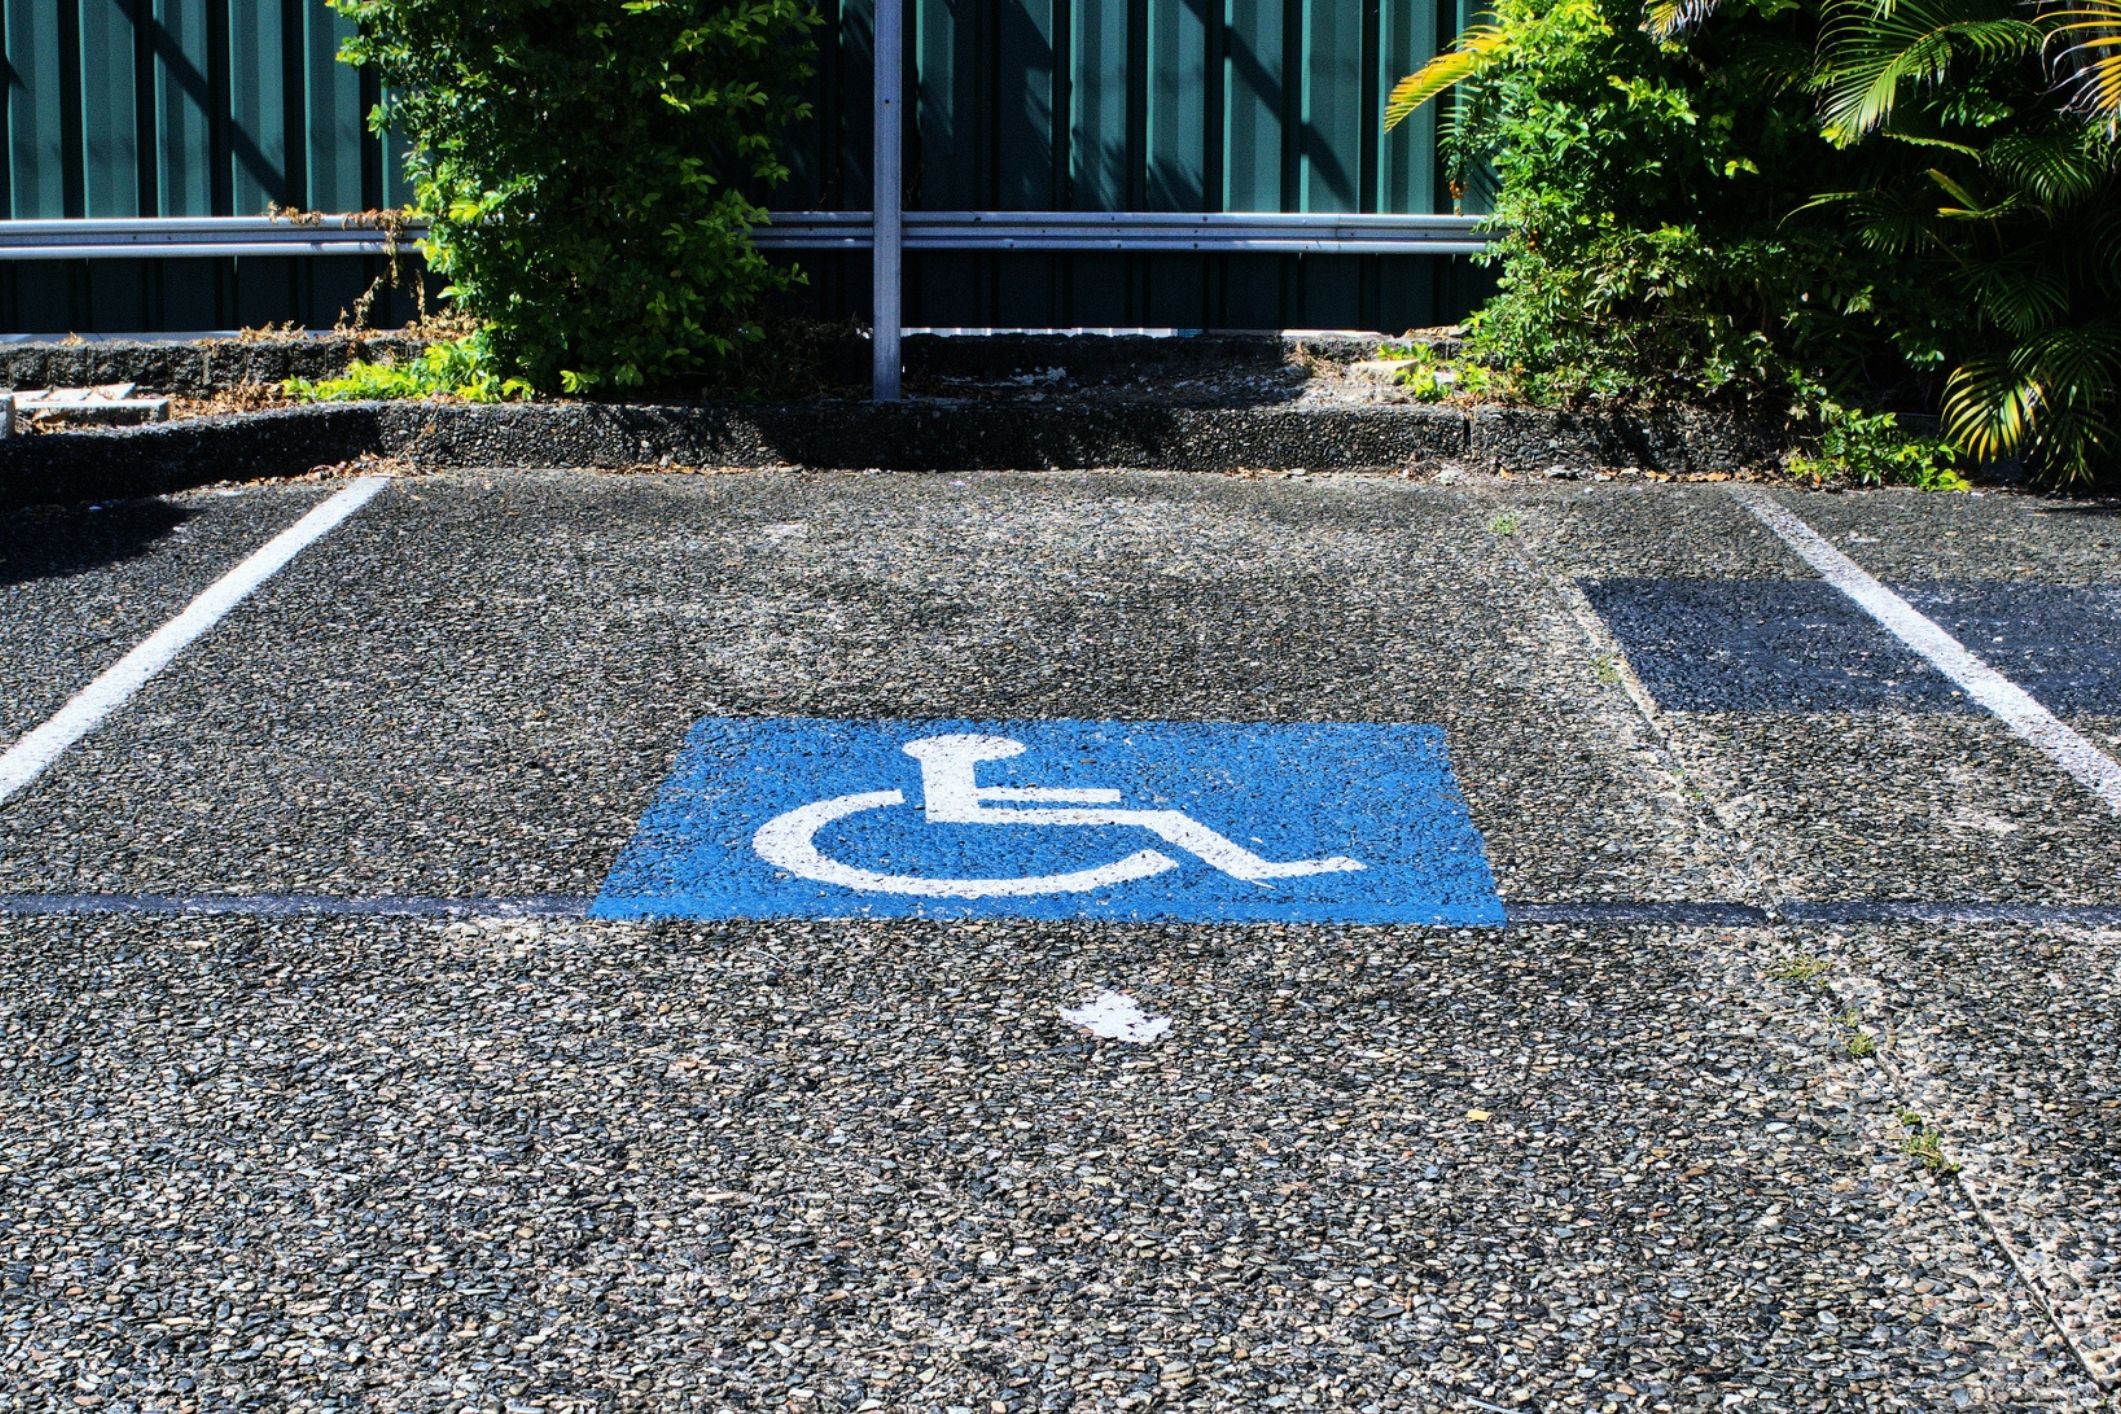 Disabled parking spot threat